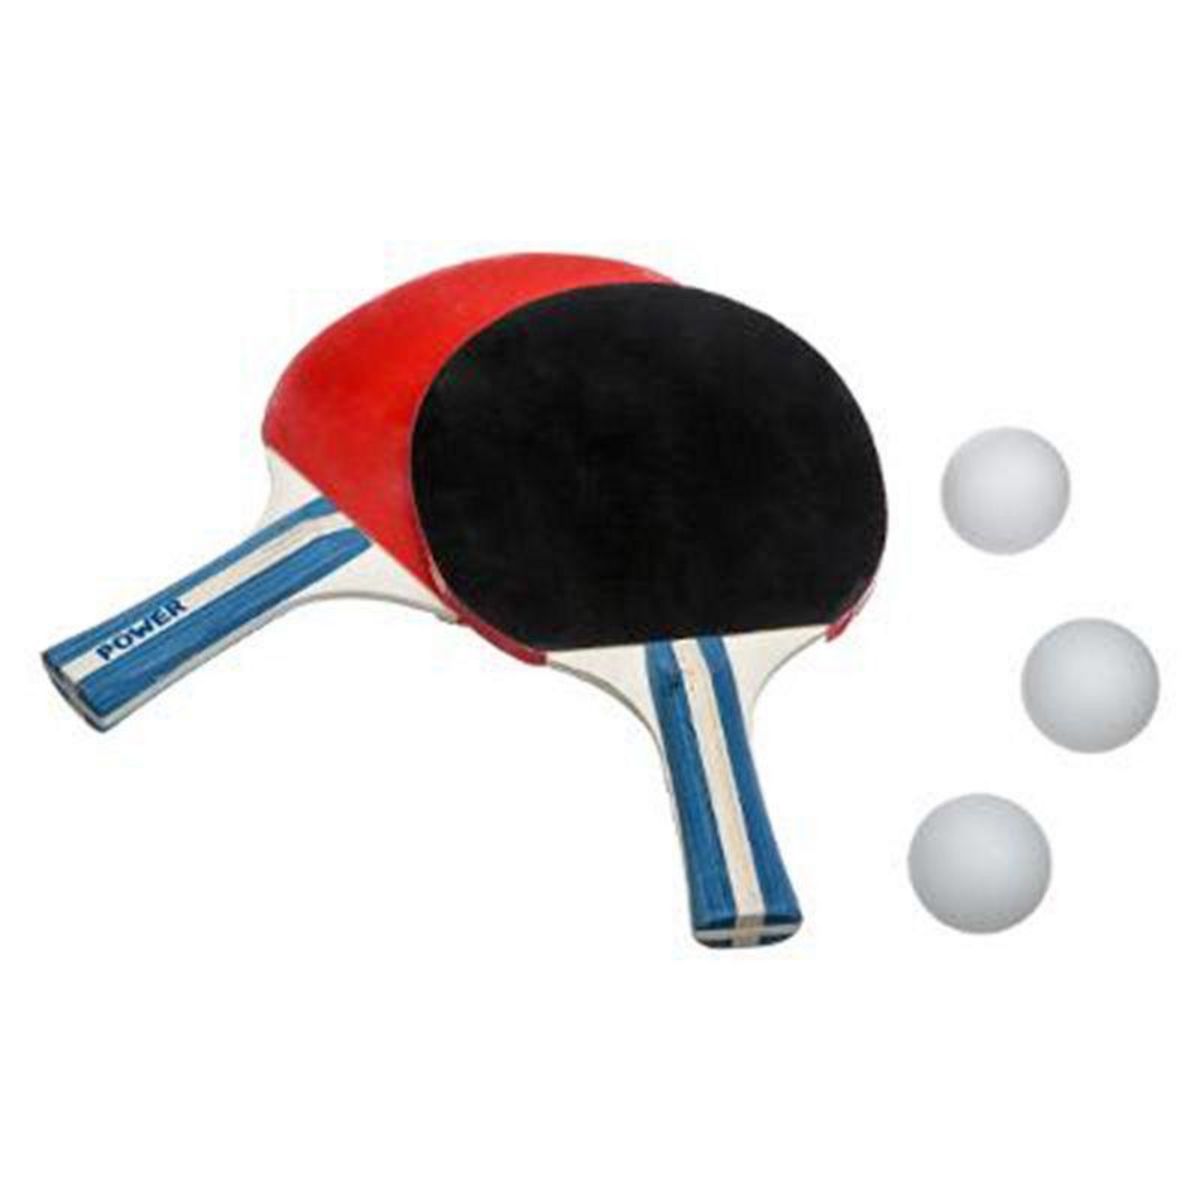  Lot de 2 Raquettes  Ping-Pong  25cm Rouge & Noir